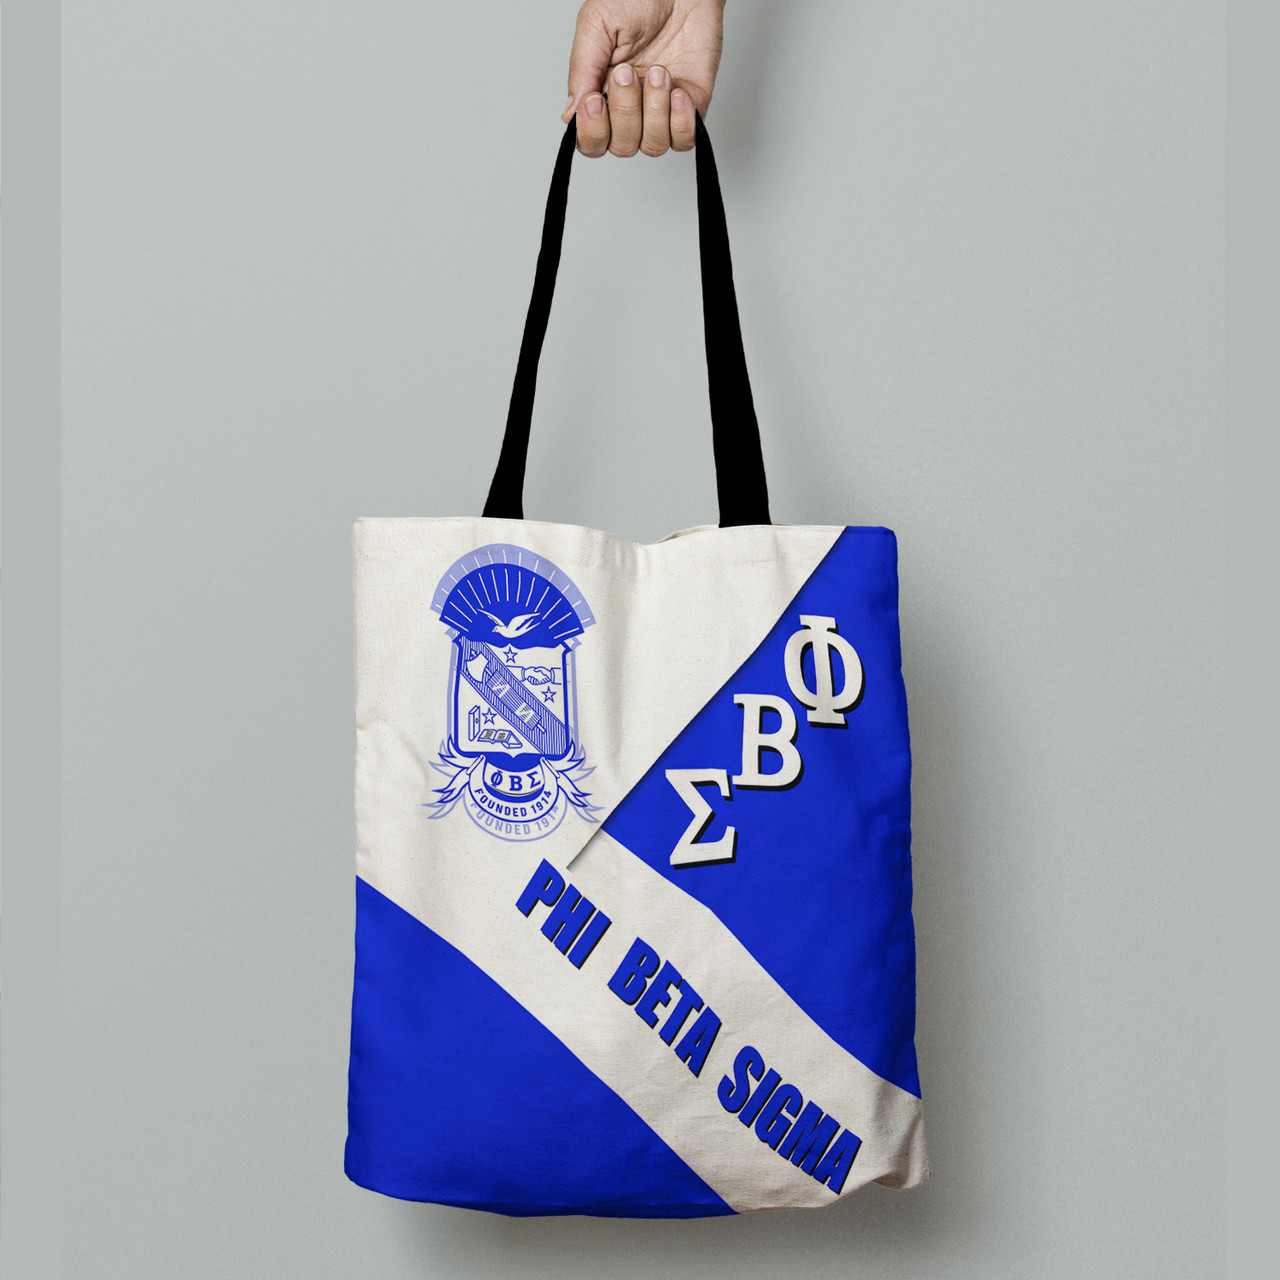 Phi Beta Sigma Tote Bag - Fraternity In Me Tote Bag